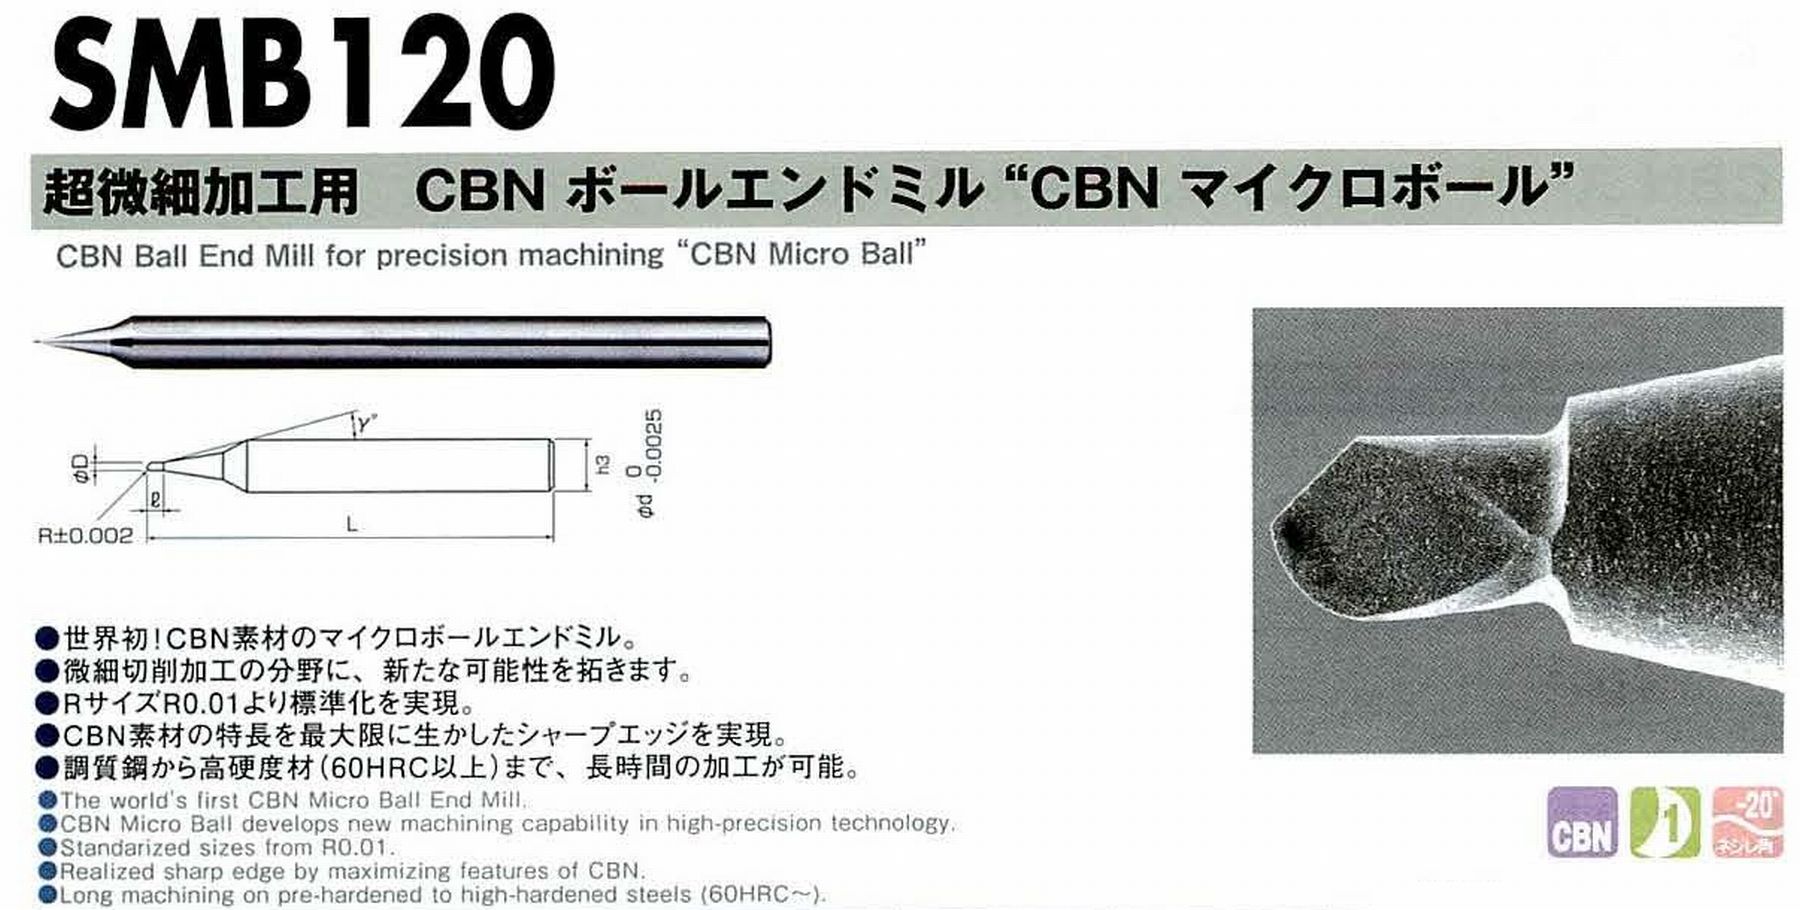 NS 日進工具 SMB120 超微細加工用 CBNボールエンドミル CBNマイクロボール コードNO．01-00460-00020 ボール半径R0.02 刃長0.04 刃径0.04 首角15° シャンク径4mm 全長50